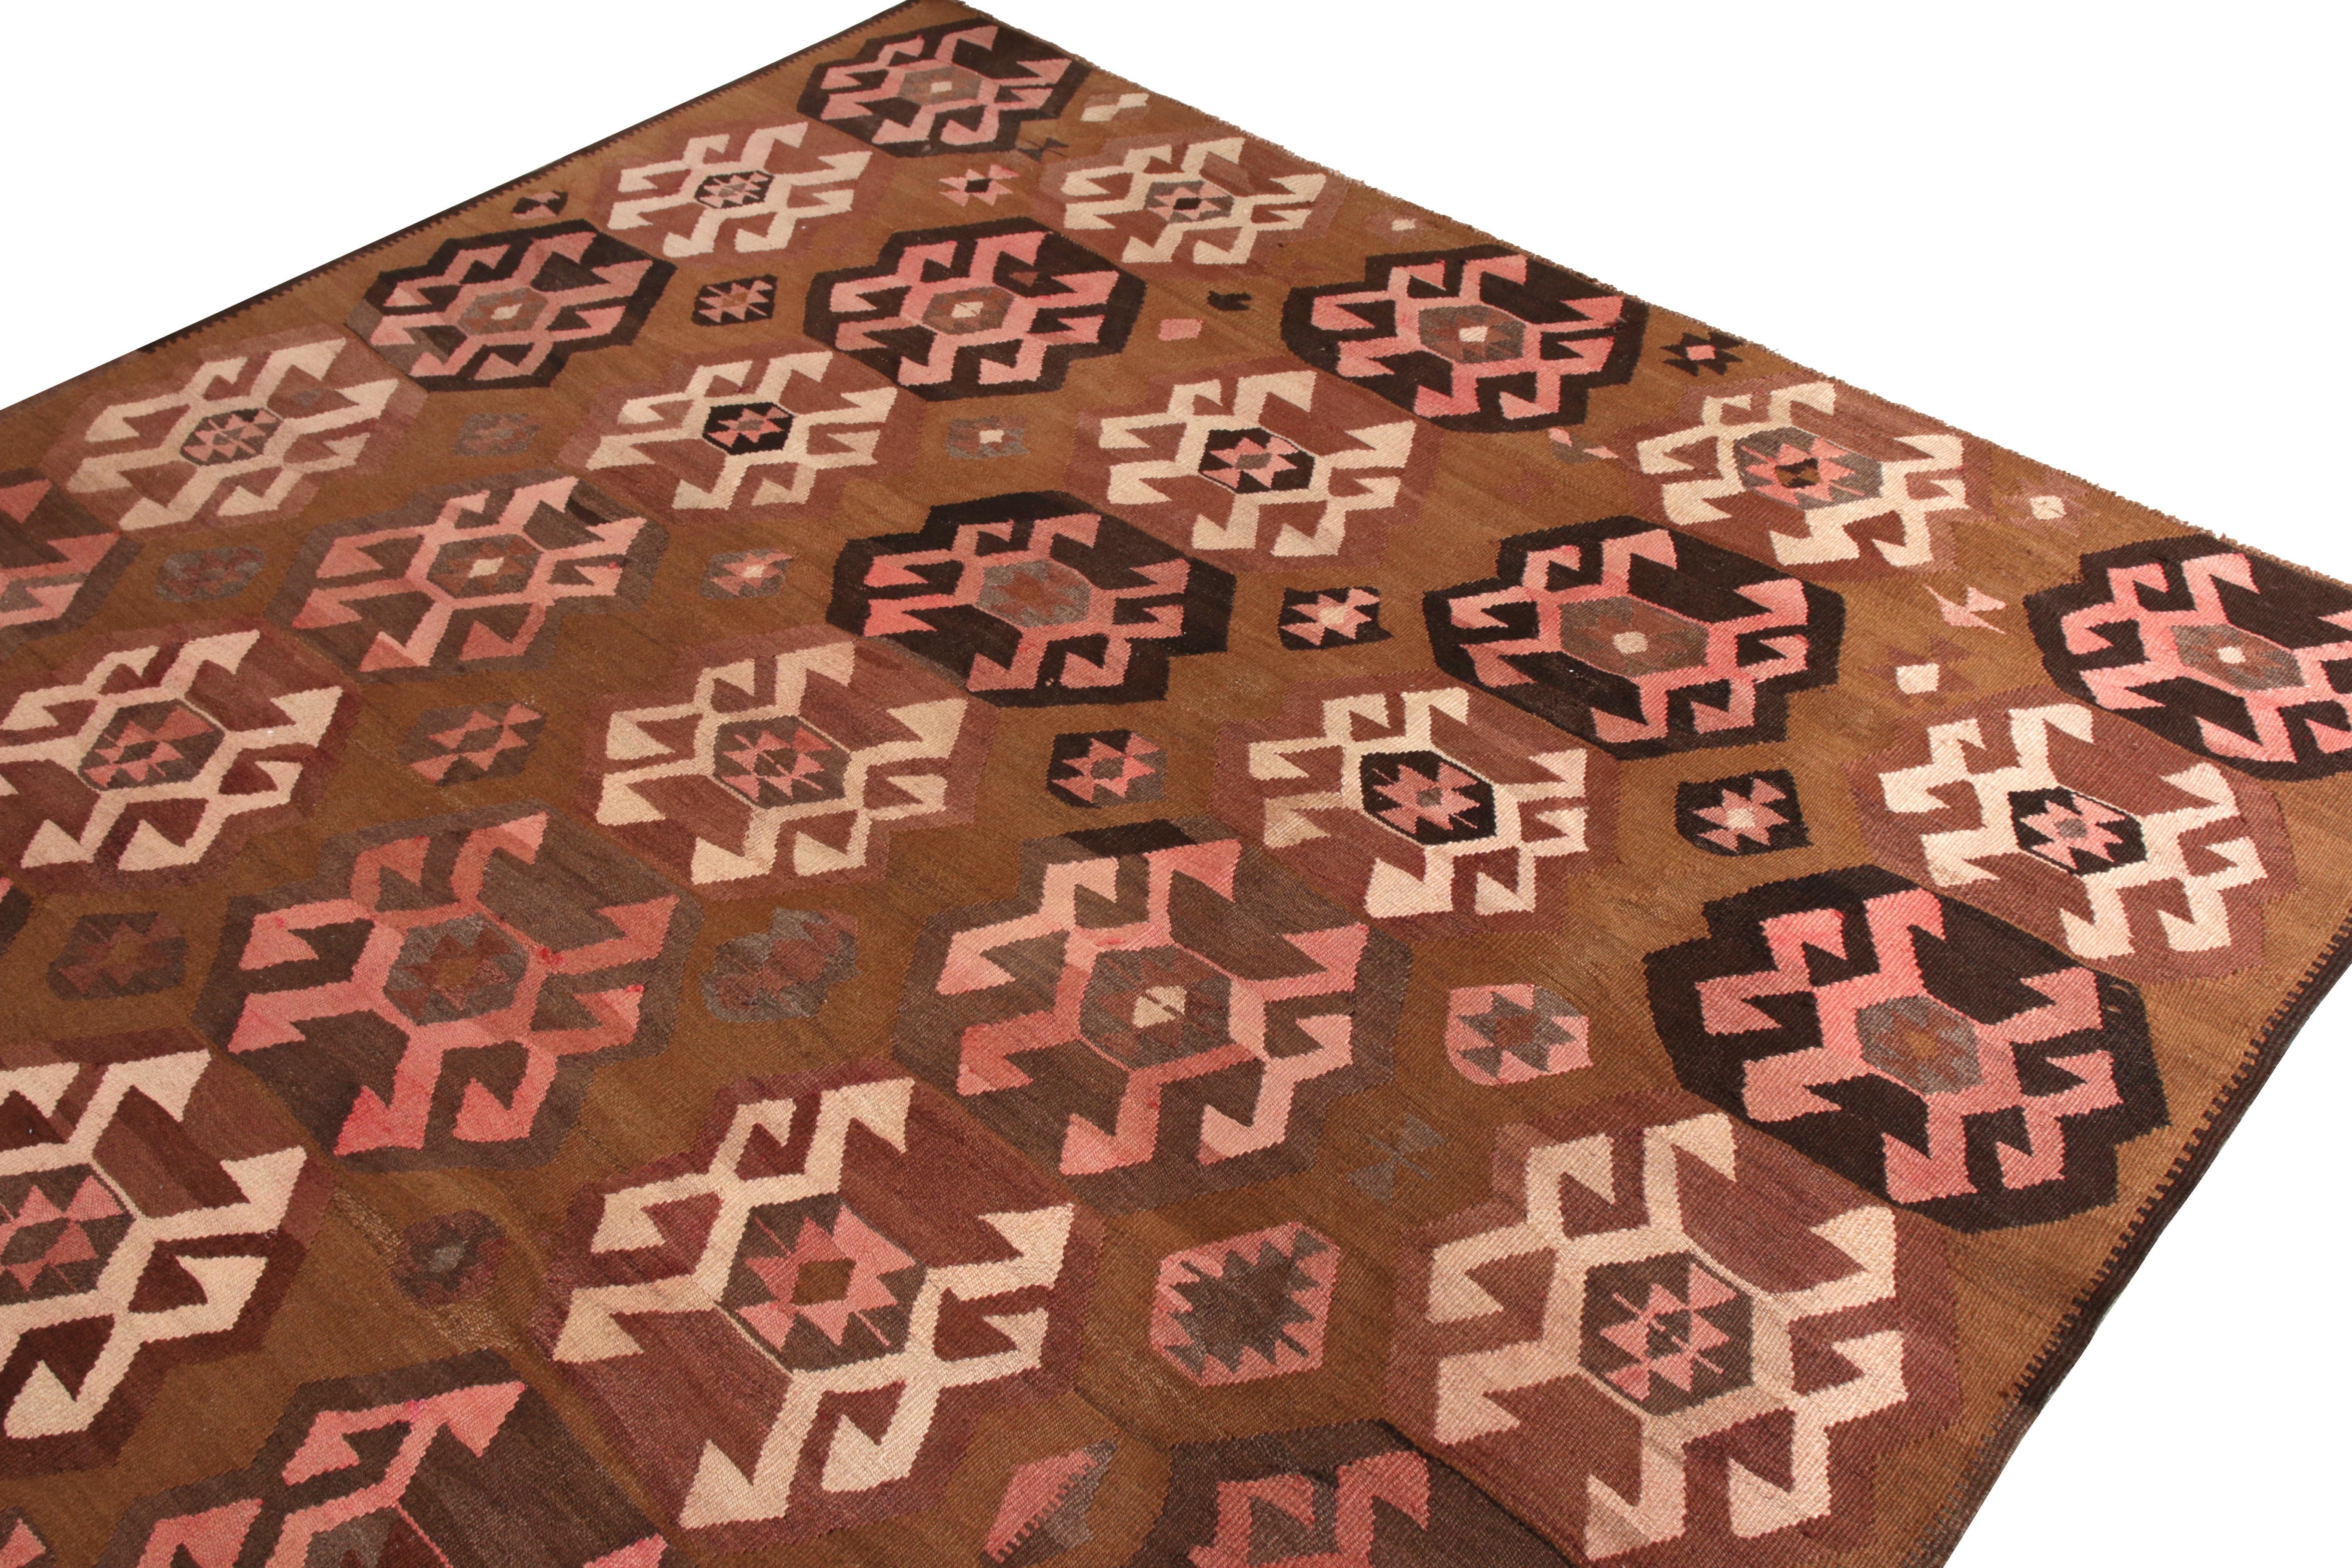 Turkish Handwoven Vintage Kilim Rug in Beige-Brown Geometric Pattern by Rug & Kilim For Sale